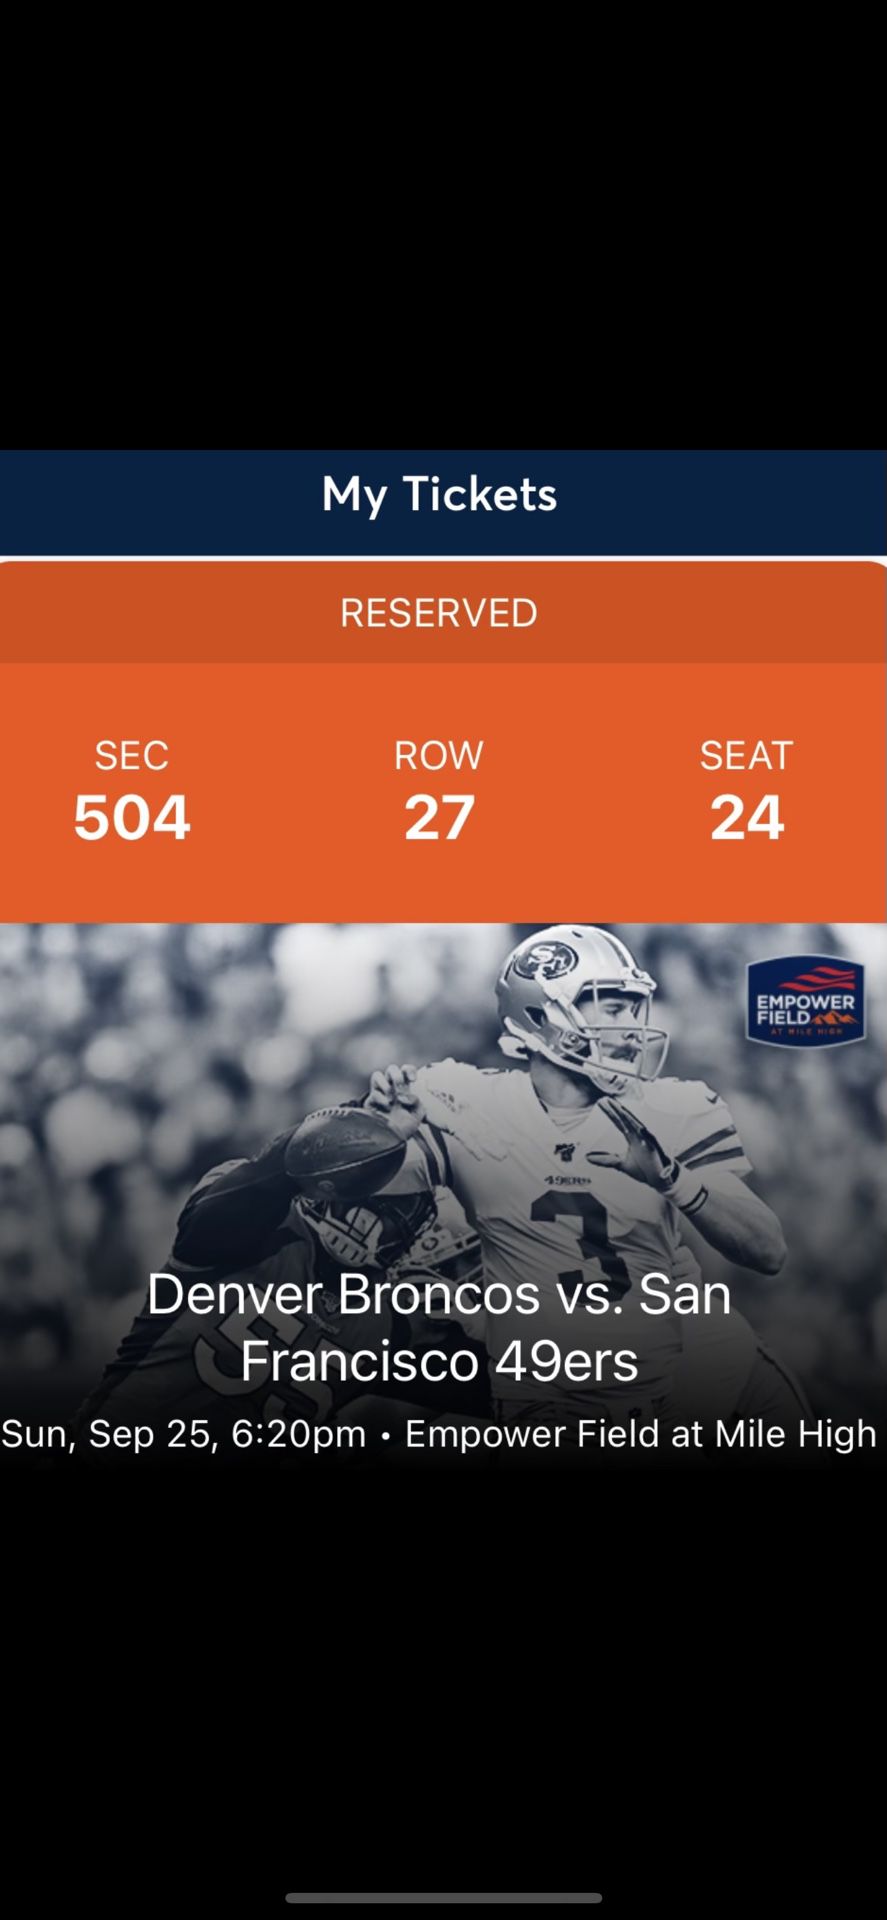 Denver Broncos vs. San Francisco 49ers